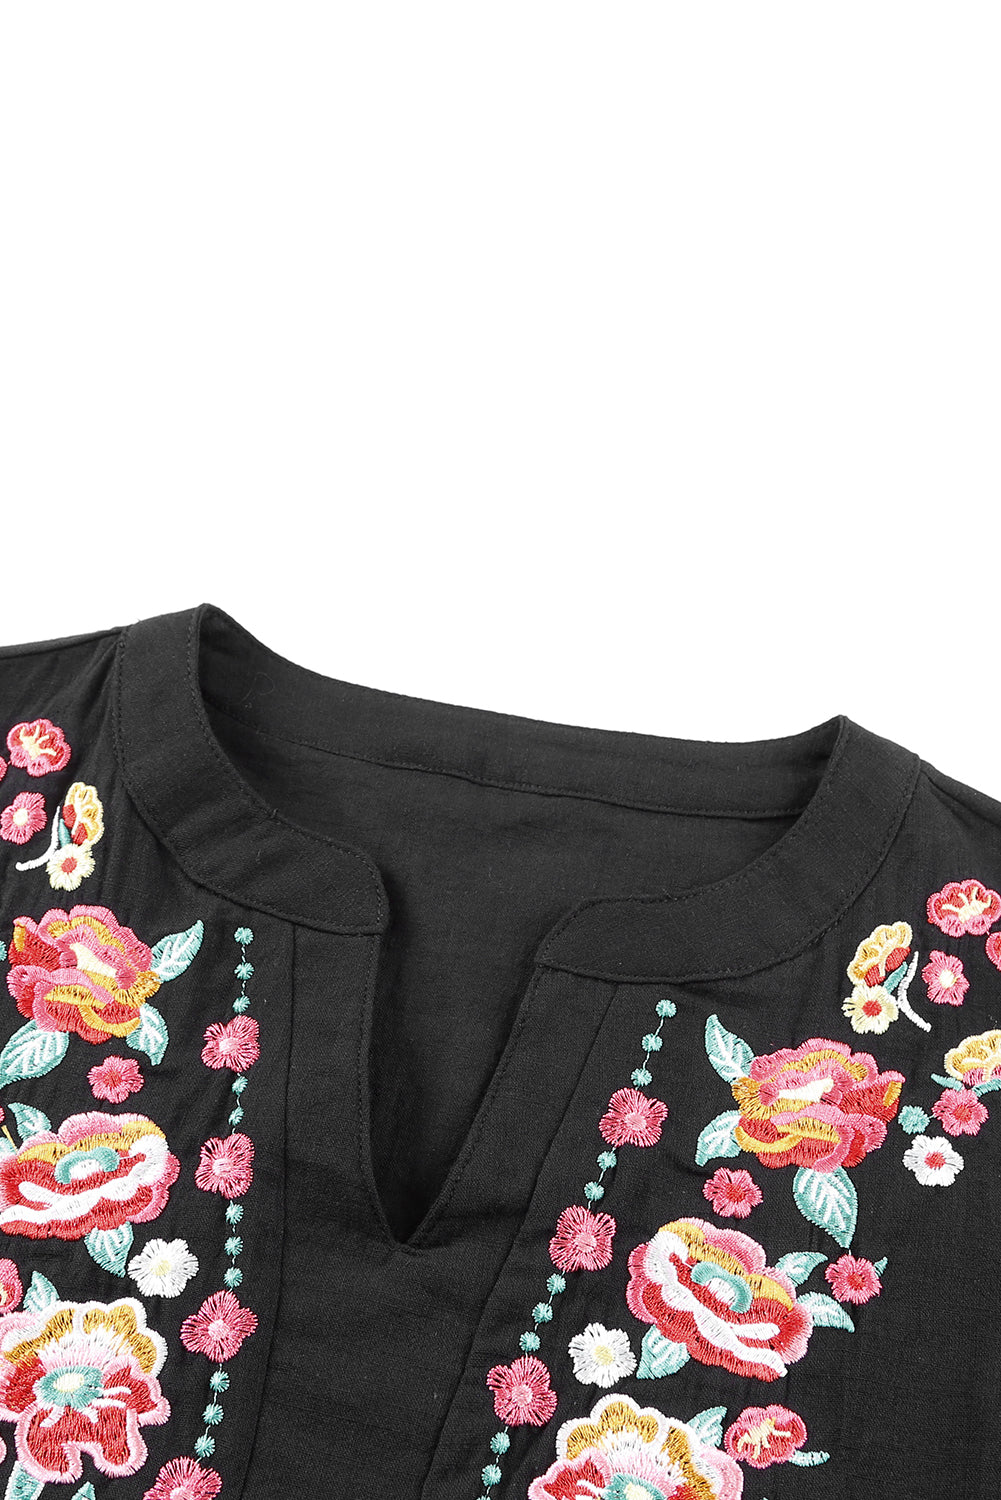 Crna cvjetno izvezena bluza s puf rukavima s volanima